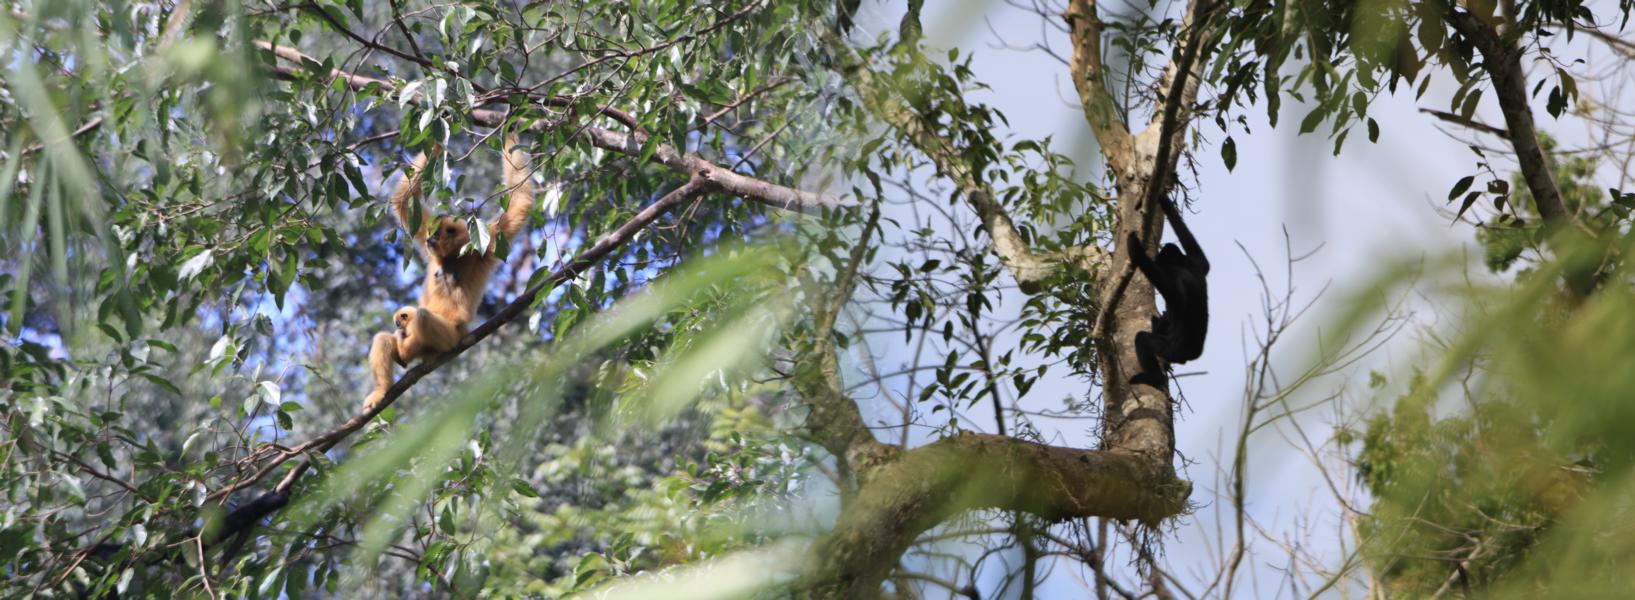 Wir hatten großes Glück, den Morgengesang der Gibbons life mitzuerleben. Wahnsinn, wie die Tierlaute durch den Dschungel dringen! Männchen (schwarz) und Weibchen (goldfarben) finden nach dem Gesang zusammen und bleiben längere Zeit auf Sichtkontakt. Erst beim genaueren Hinsehen erblickten wir das Jungtier, das sich im Fell der Mutter festkrallte.